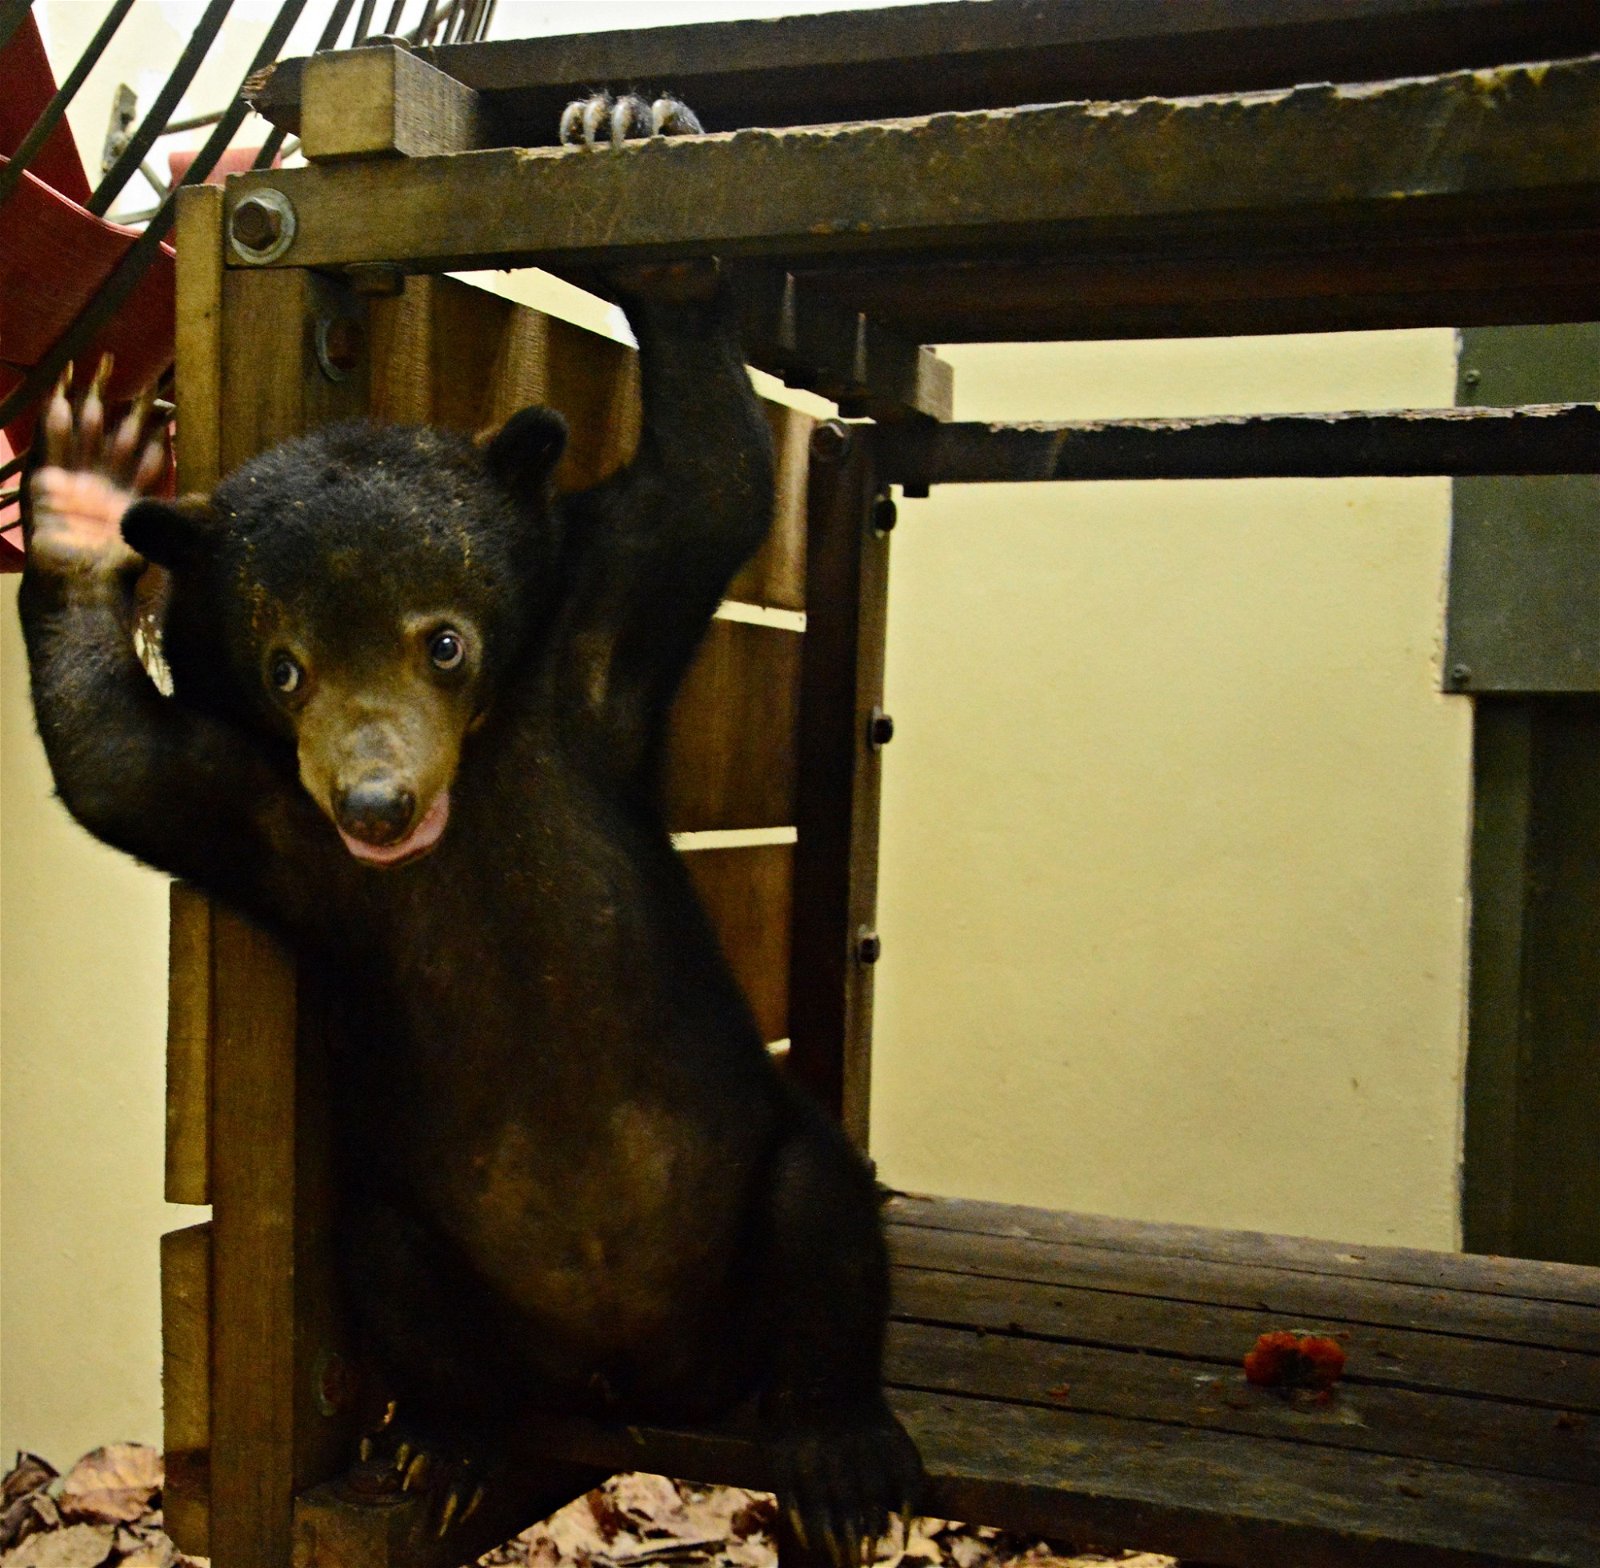 为了应付市场对熊物品 的要求，马来熊也成了 非法猎捕的对象之一。 黄修德指出，近5年的 大马马来熊数量巨减， 每一只马来熊一生最多 能产下4至5只熊宝宝， 低生产率的他们无法抵 抗大环境的改变及人类 的捕杀。